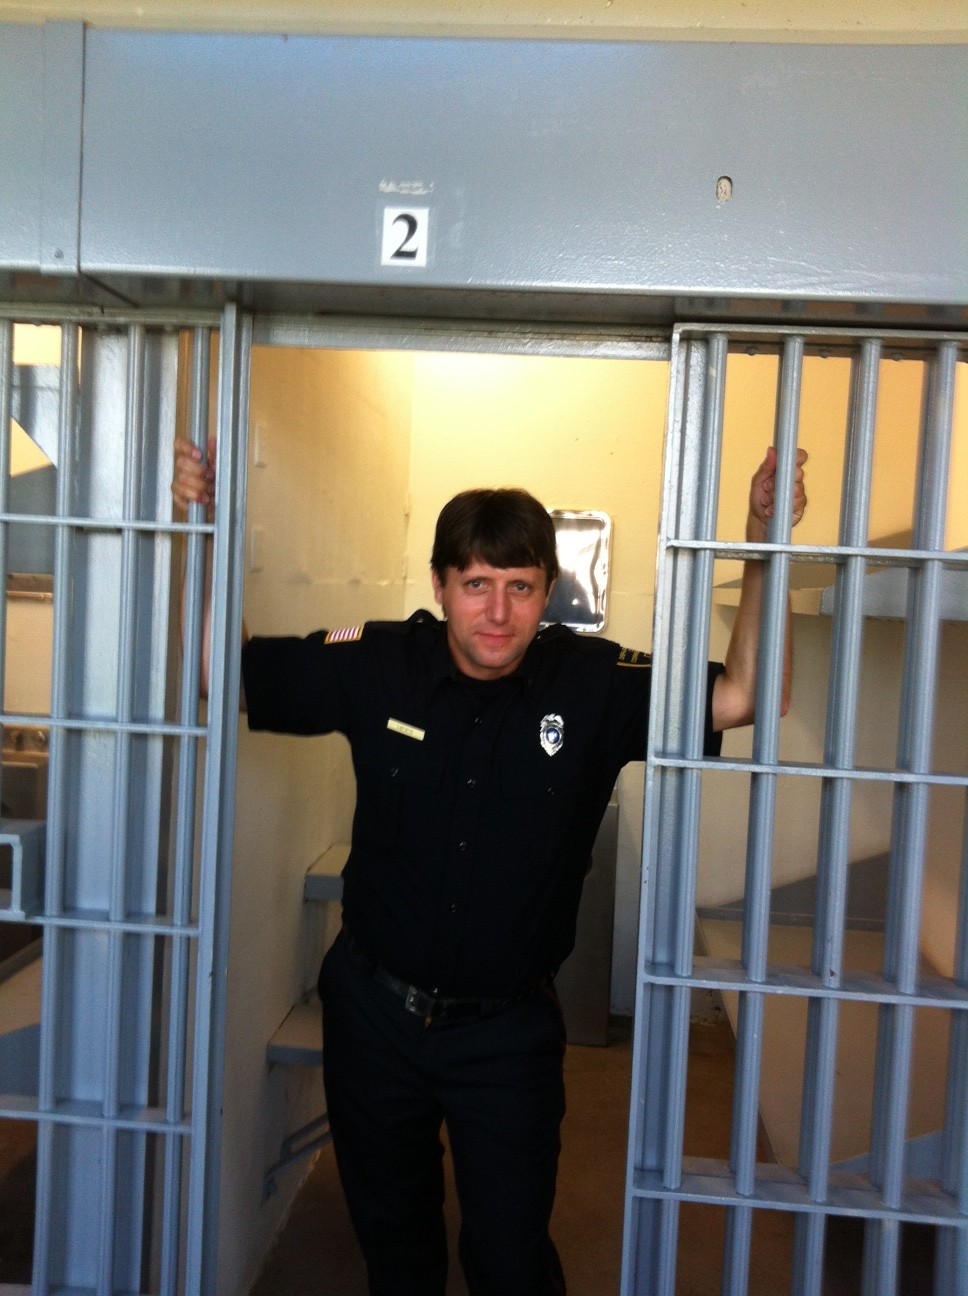 Prison guard in 